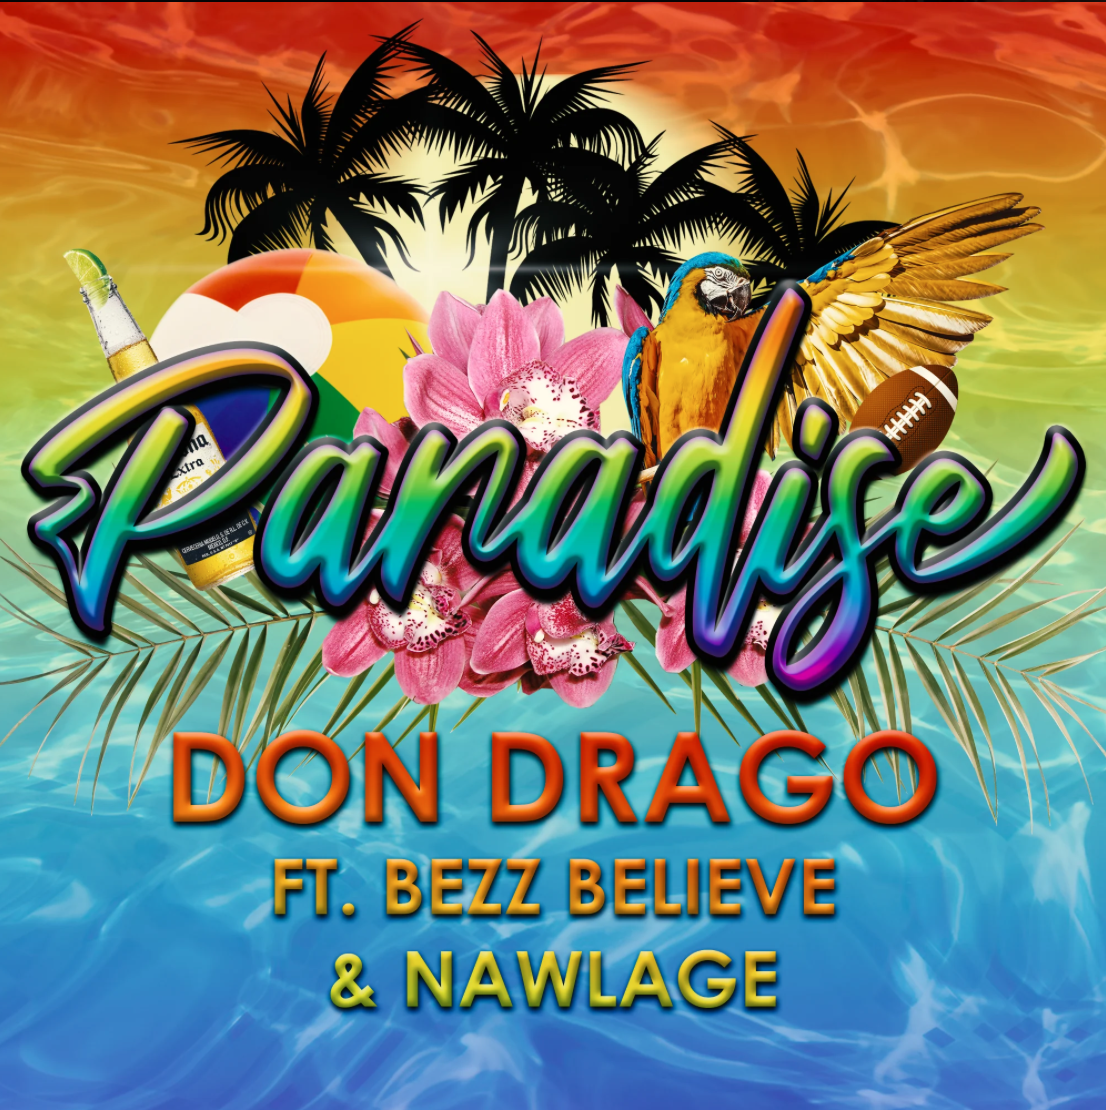 Don Drago Paradise Ft Bezz Believe & Nawlage